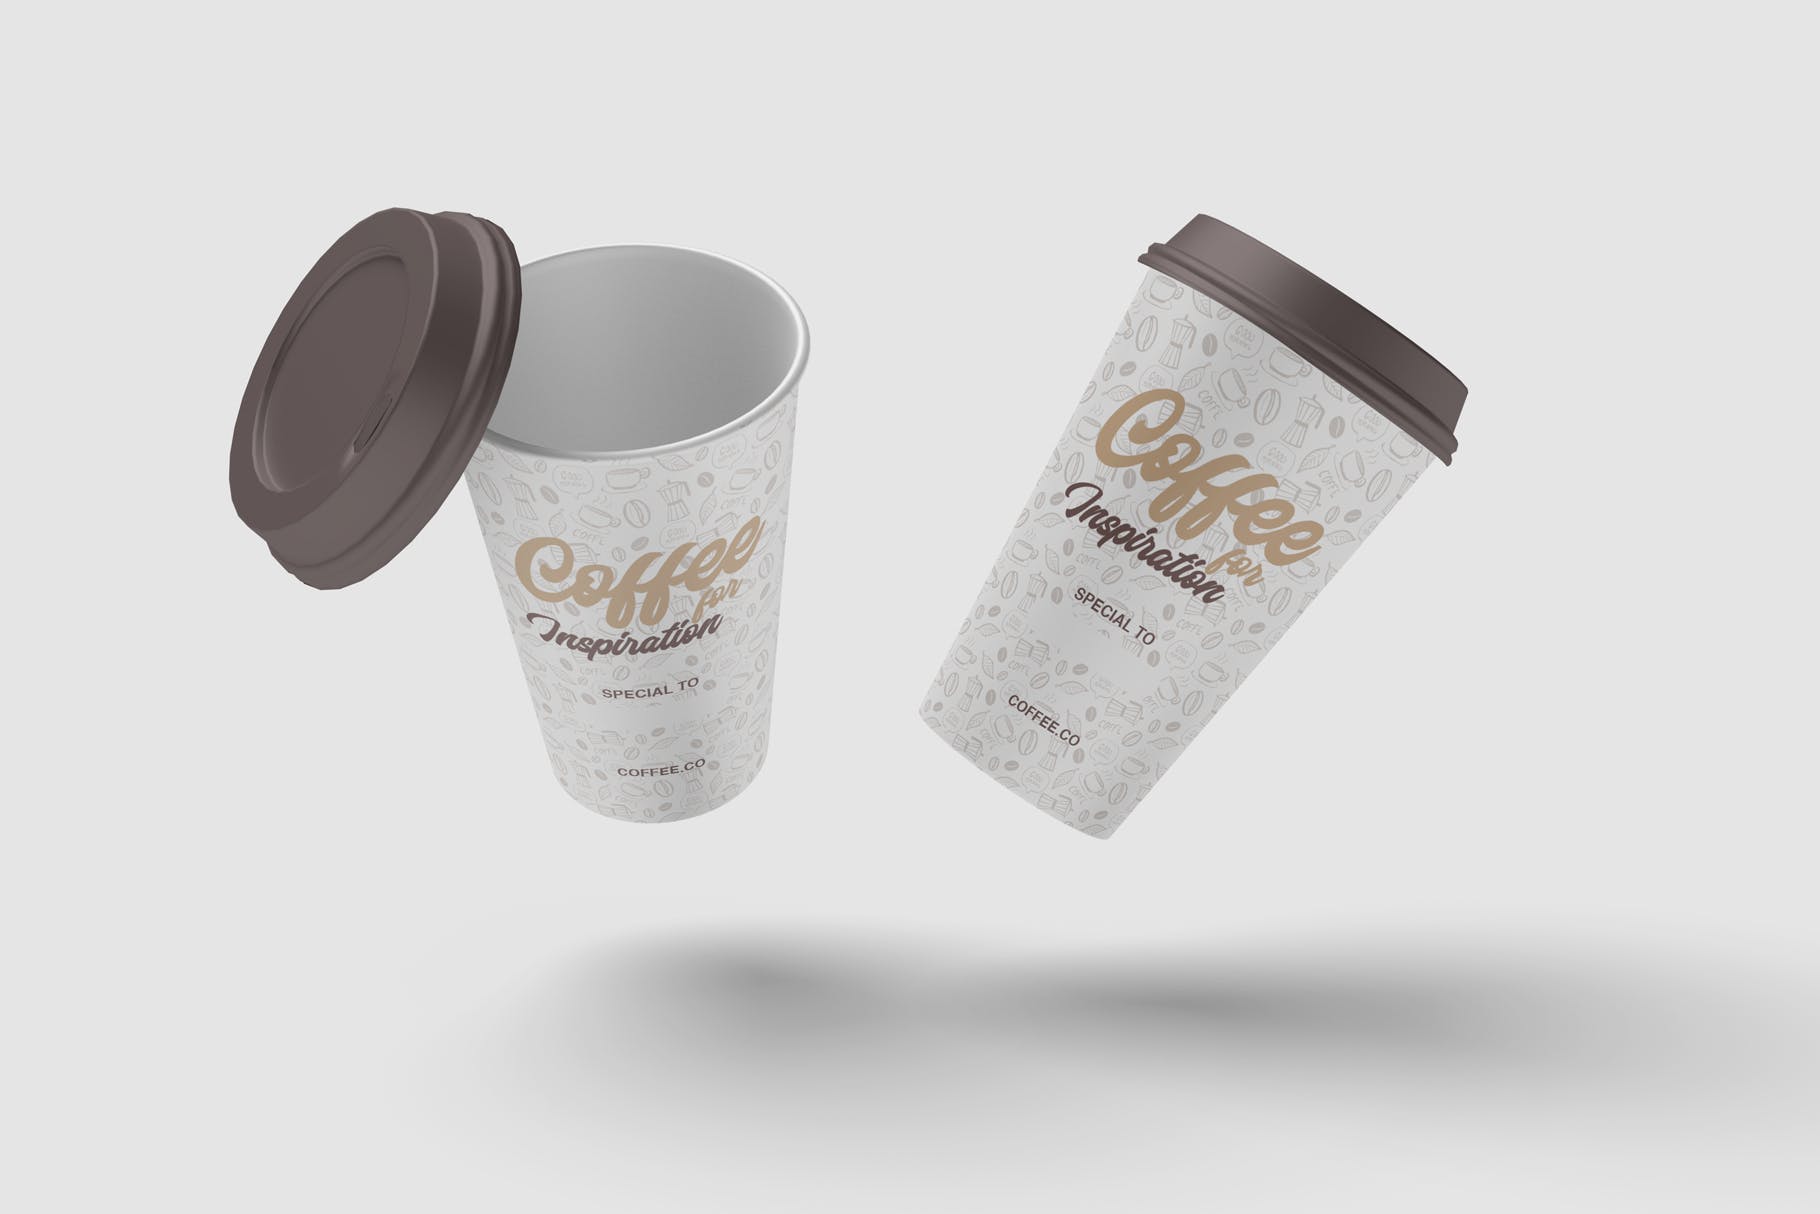 咖啡纸杯外观图案设计预览蚂蚁素材精选 Cup of Coffee Mockup插图(3)